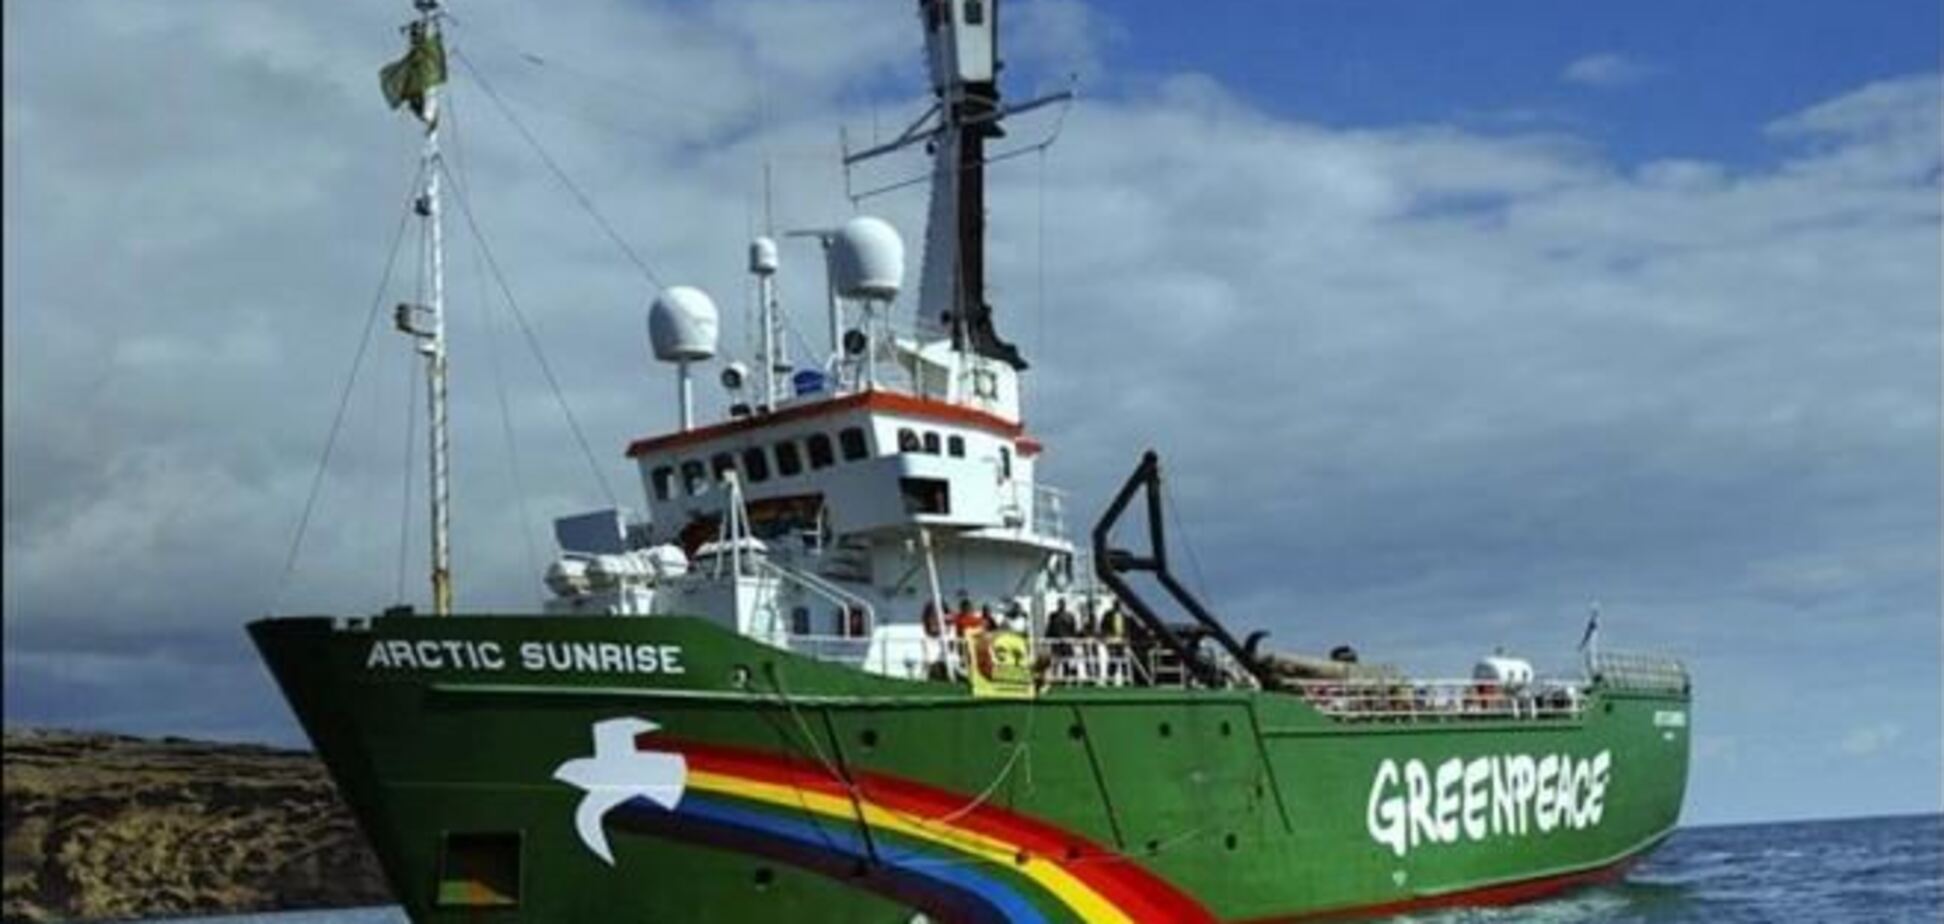 'Газпром': акция активистов Greenpeace ставила под угрозу жизнь работников платформы